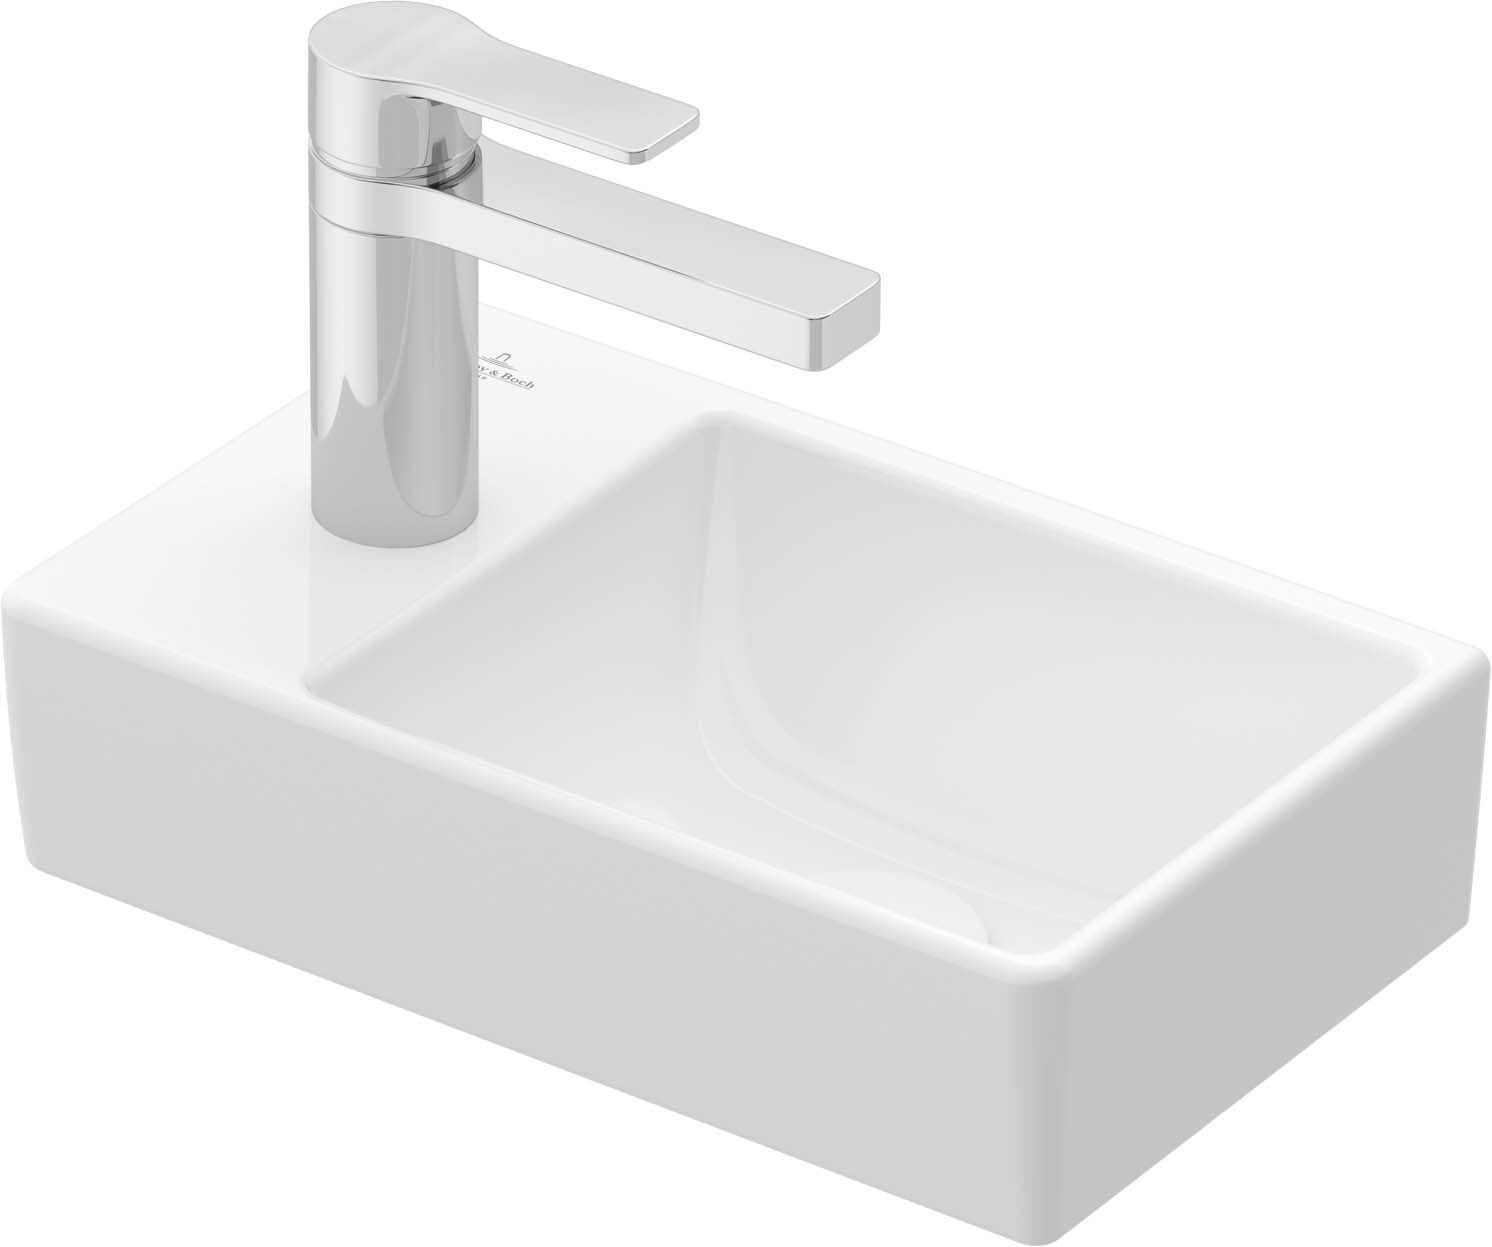 Villeroy und Boch Avento Handwaschbecken 43003R01 36 x 22 cm, 1 Hahnloch, ohne Überlauf, rechts, weiß